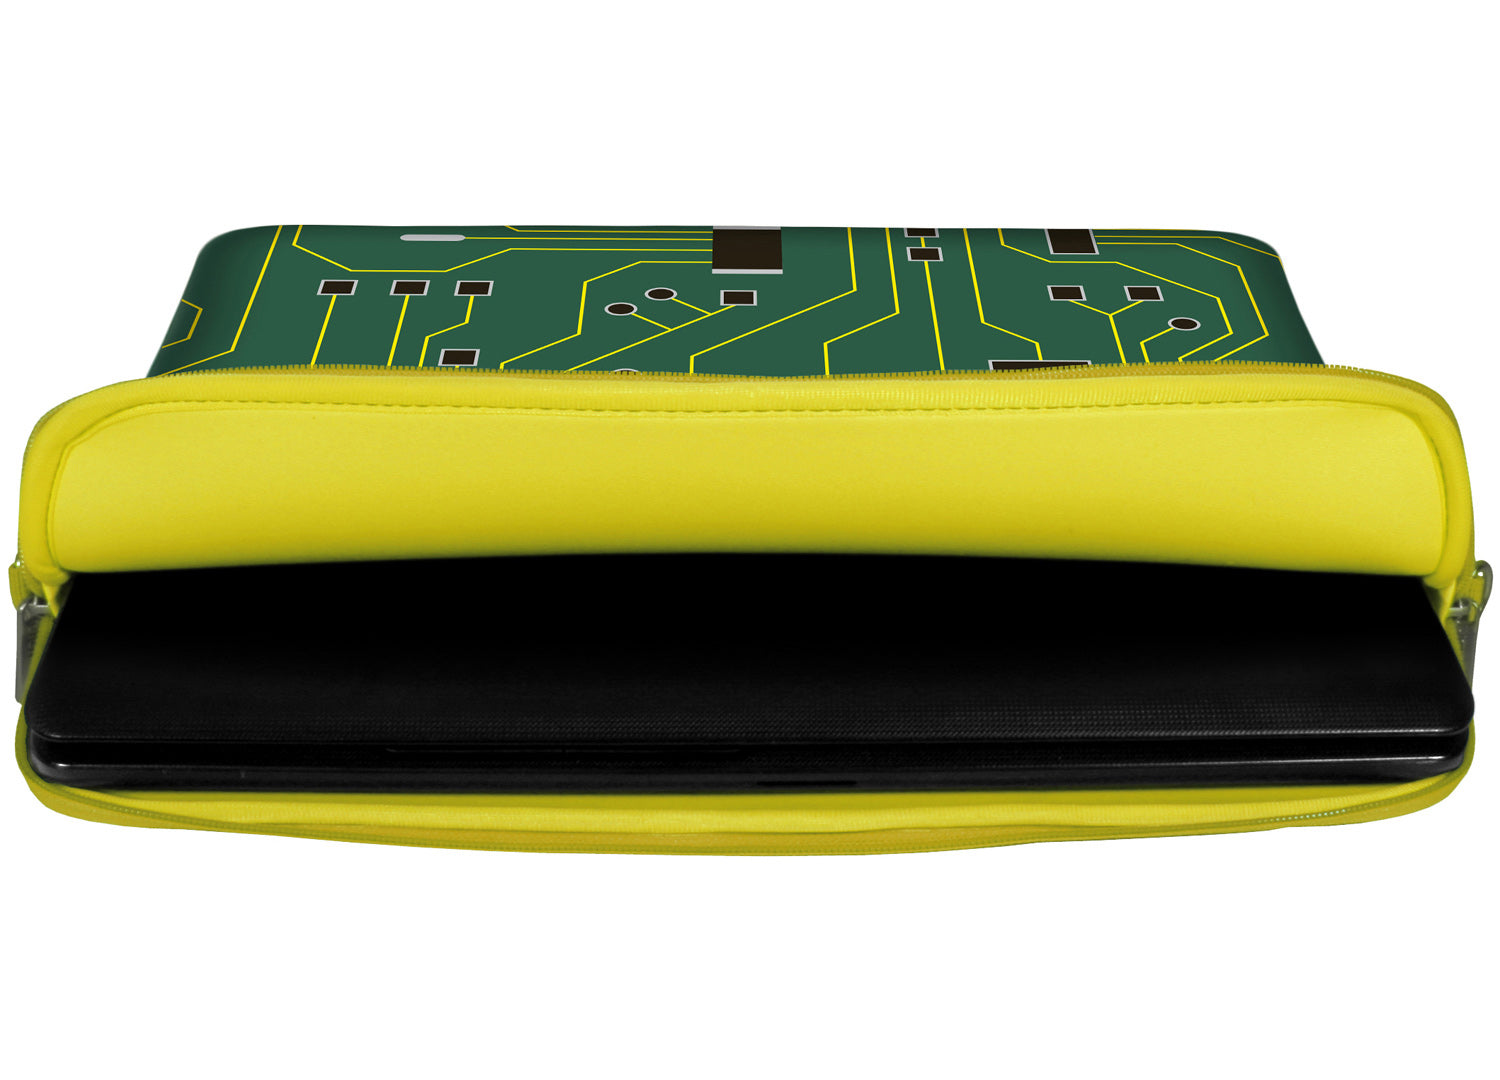 Innenansicht mit Schutzlippen der LS125 Green IT Designer Laptop Tasche in gelb aus wasserabweisendem Neopren